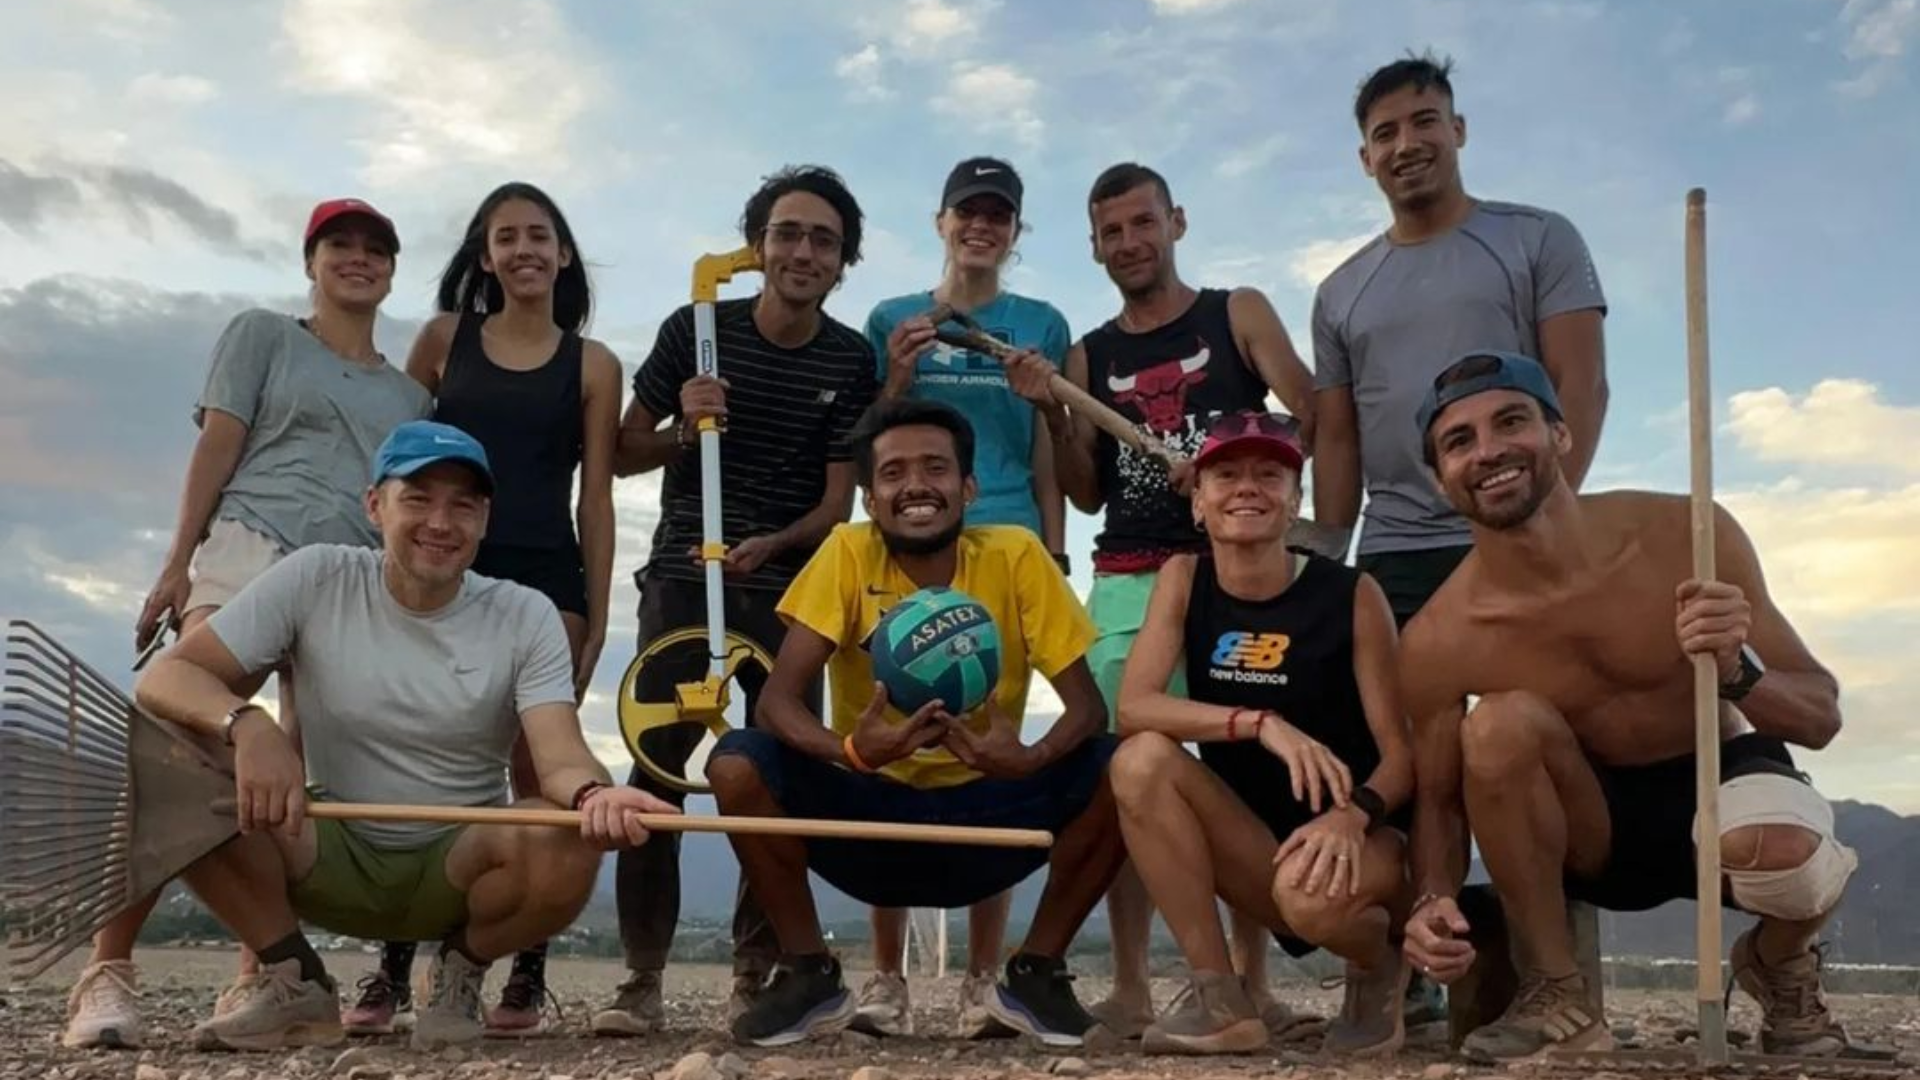 Pista del desierto: los atletas siguen juntando fondos para las obras